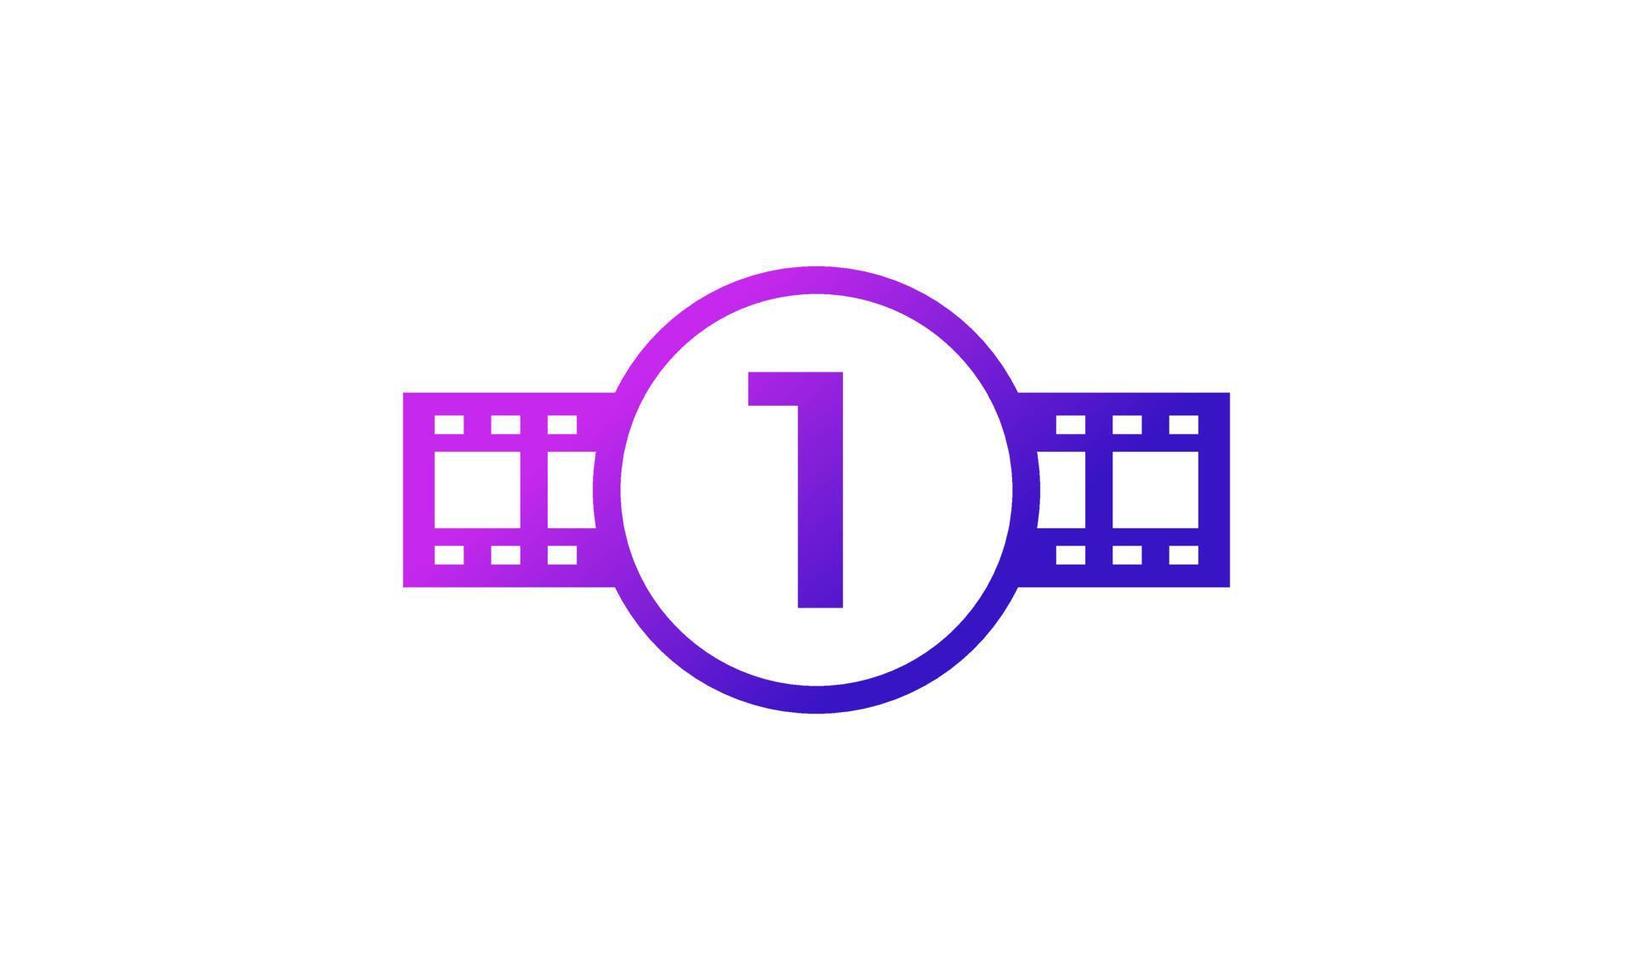 nummer 1 kreis mit reel streifen filmstreifen für film film kino produktionsstudio logo inspiration vektor